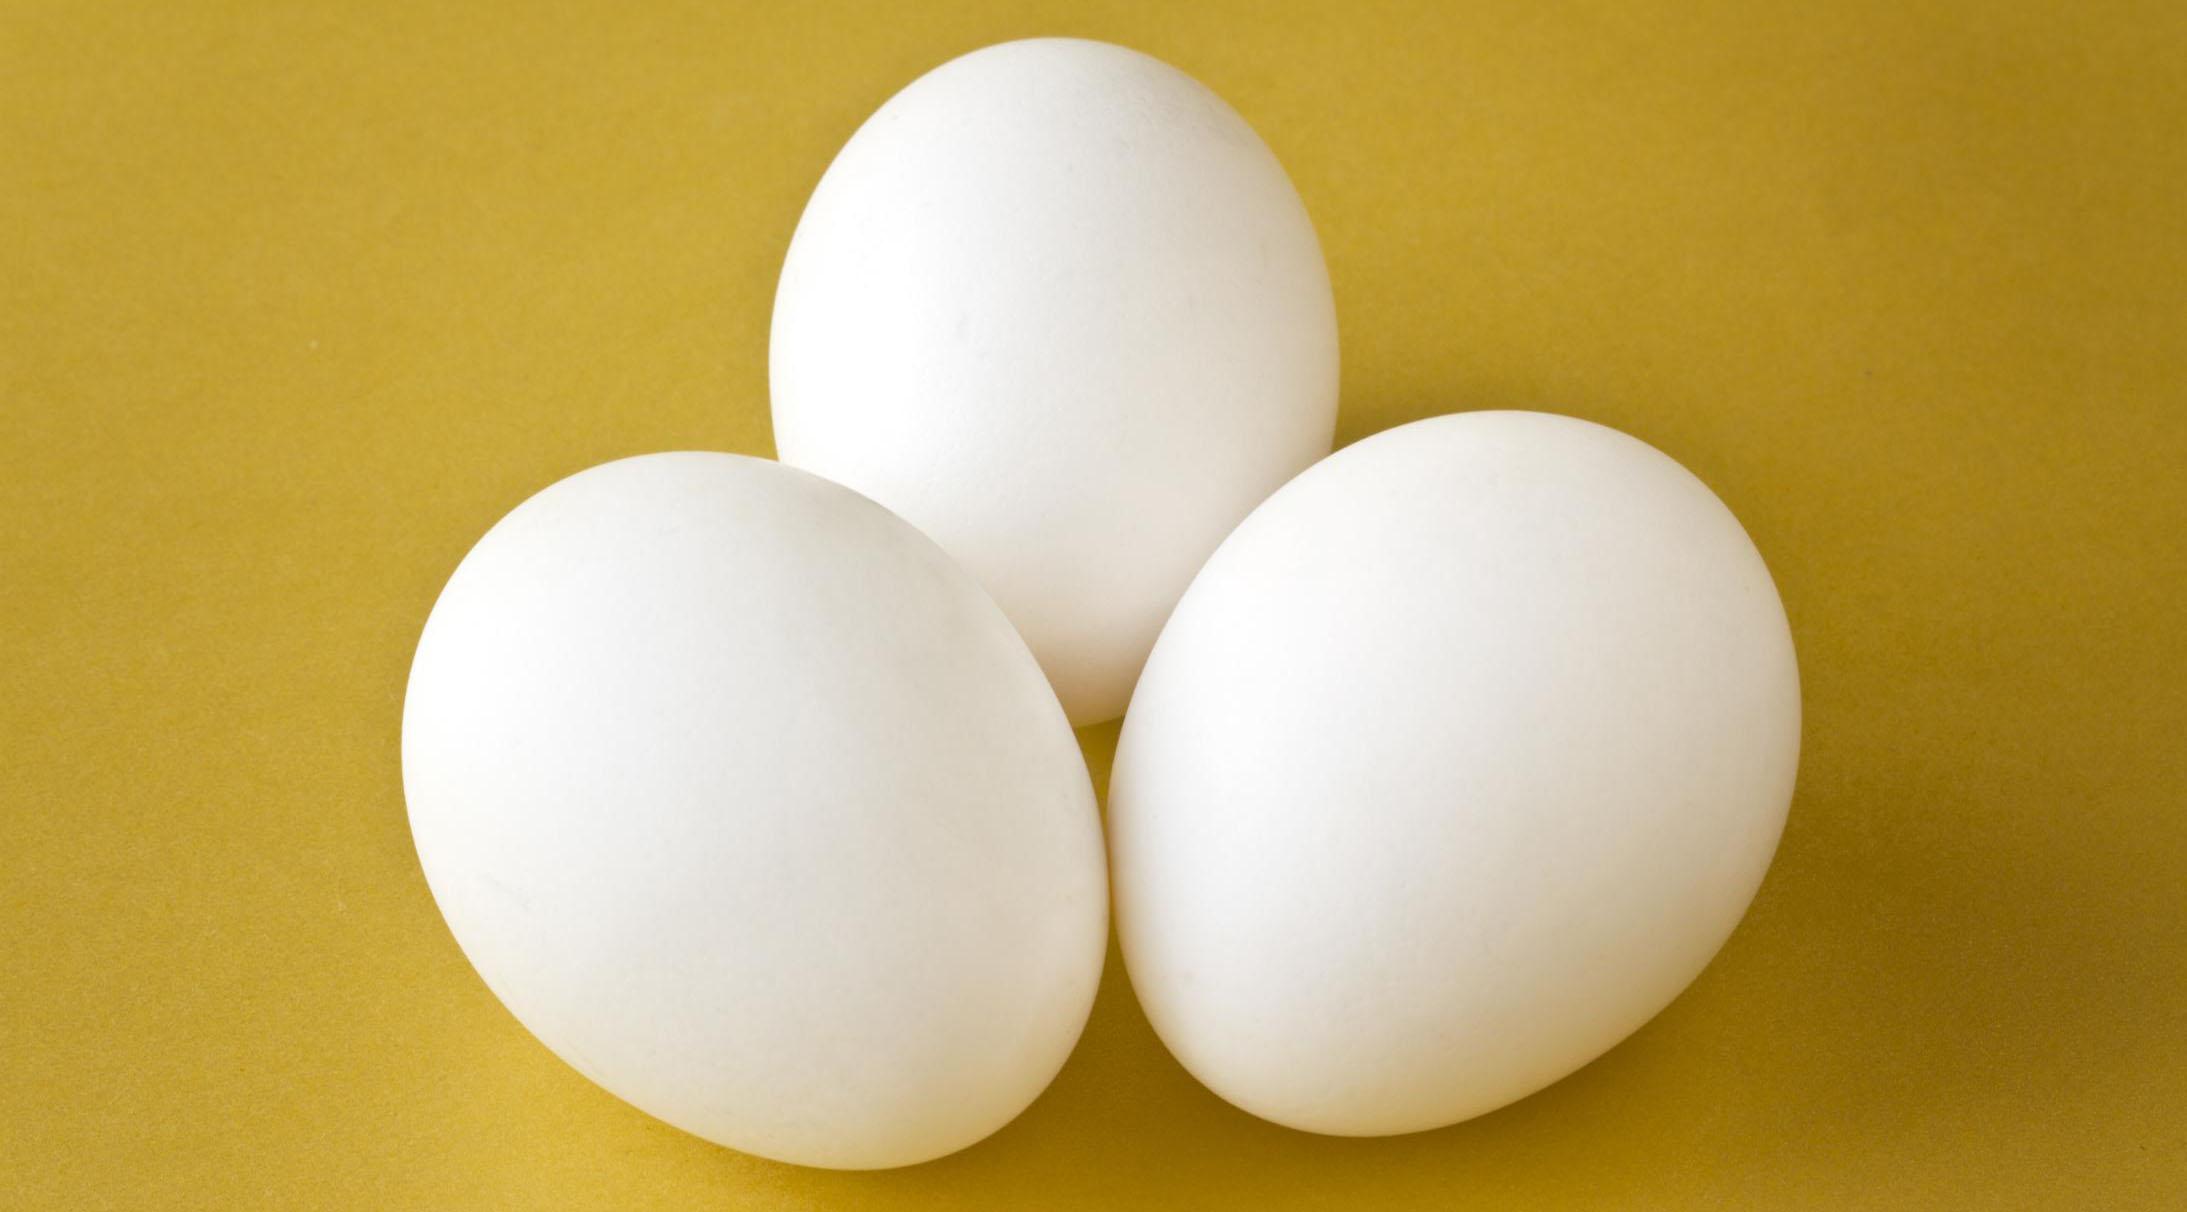 دست فروشان تخم مرغ در قزوین جمع آوری شدند